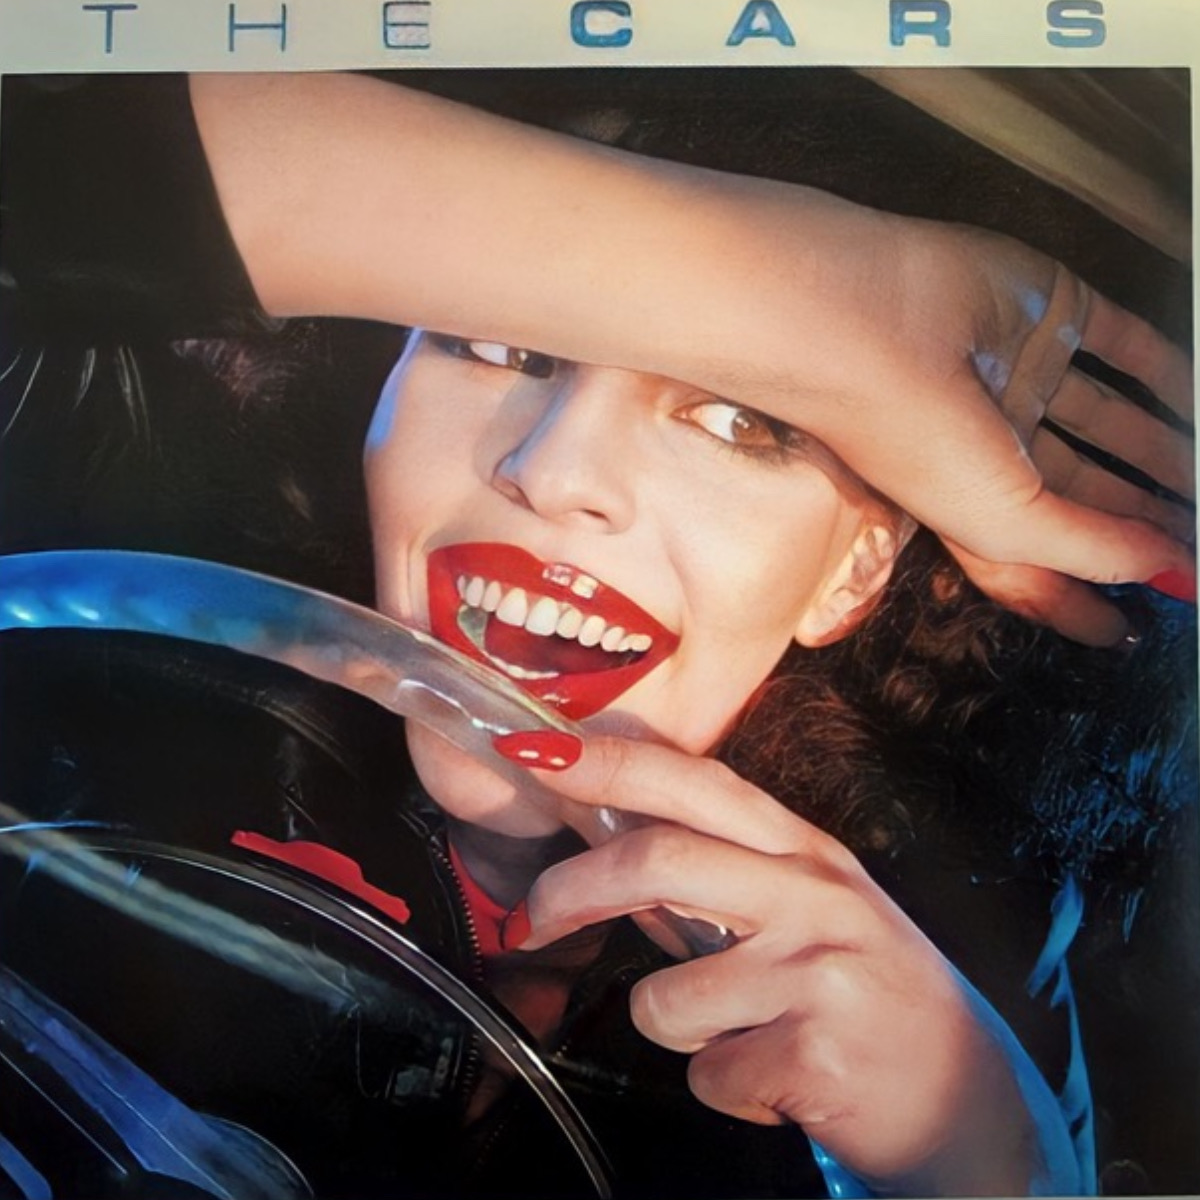 Albumcover von "The Cars" von der Band The Cars